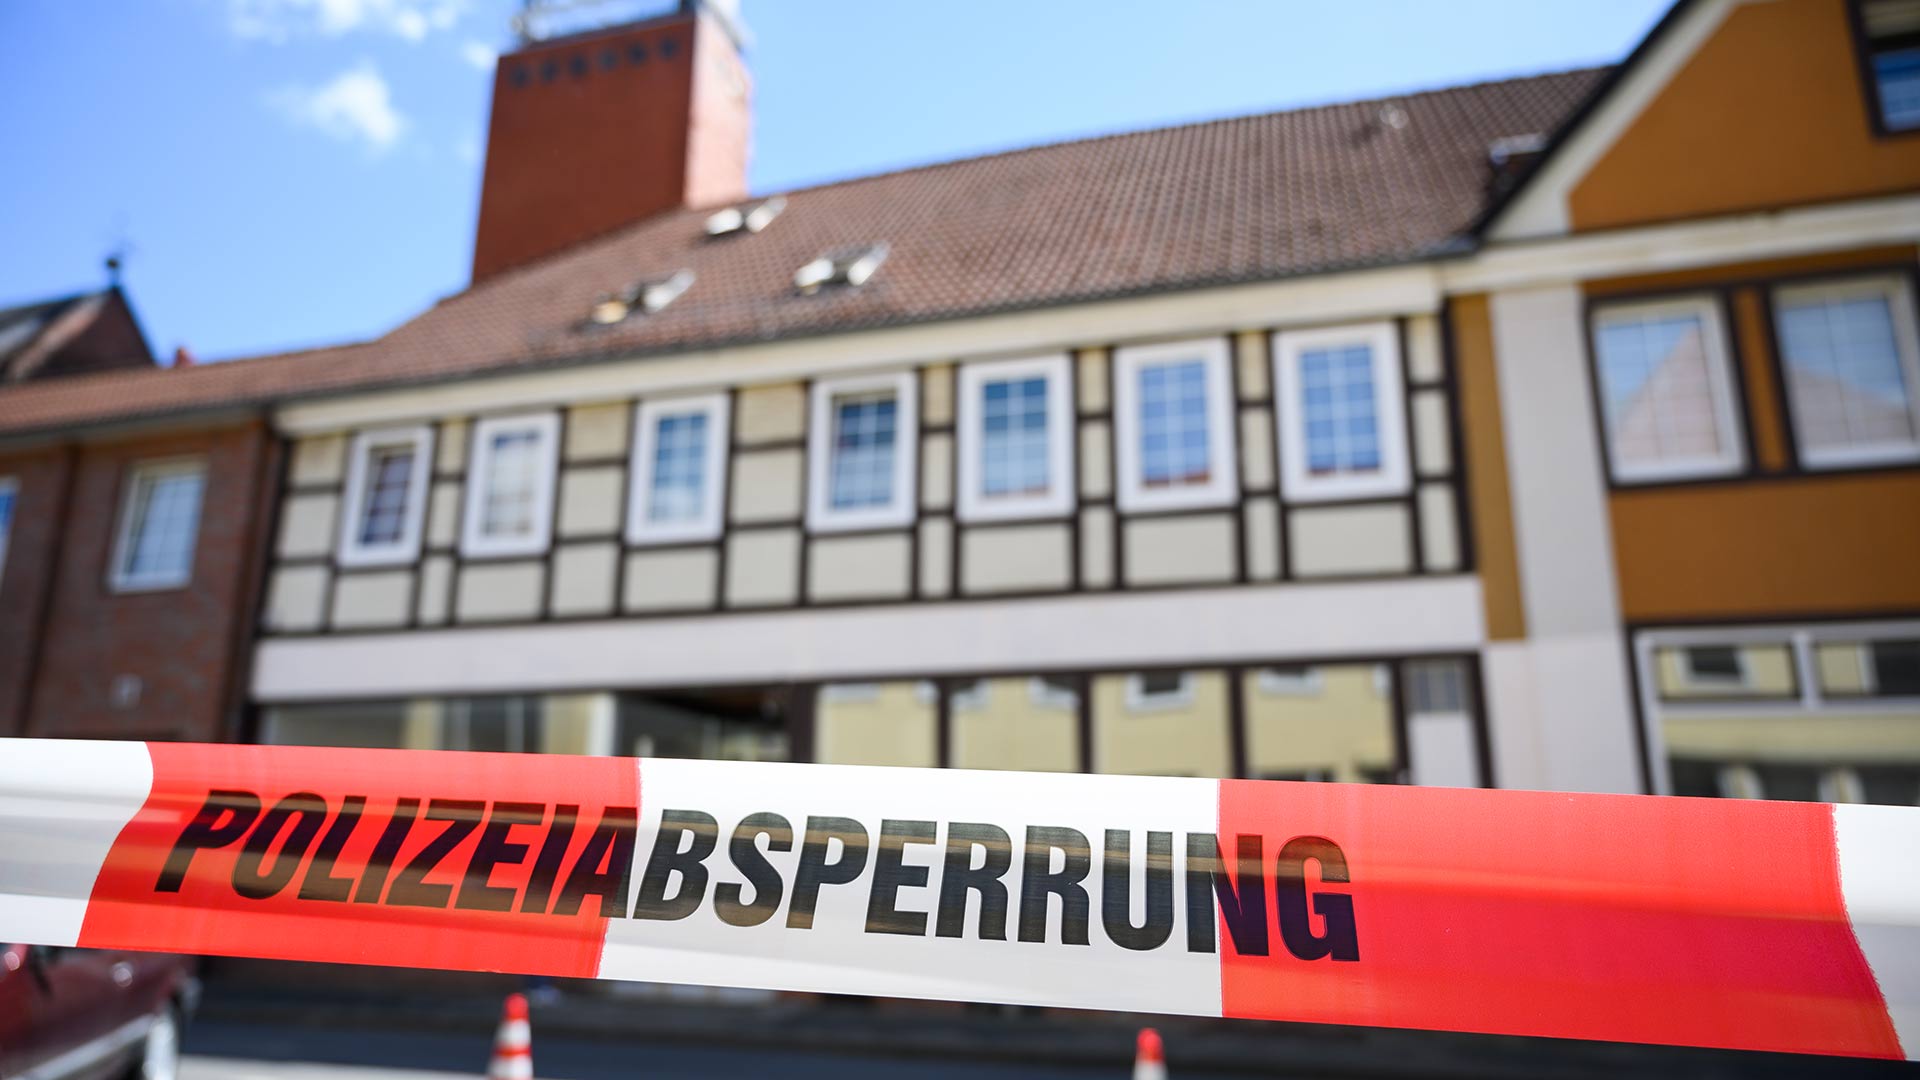 Una secta podría estar detrás de los misteriosos asesinatos con ballesta en Alemania